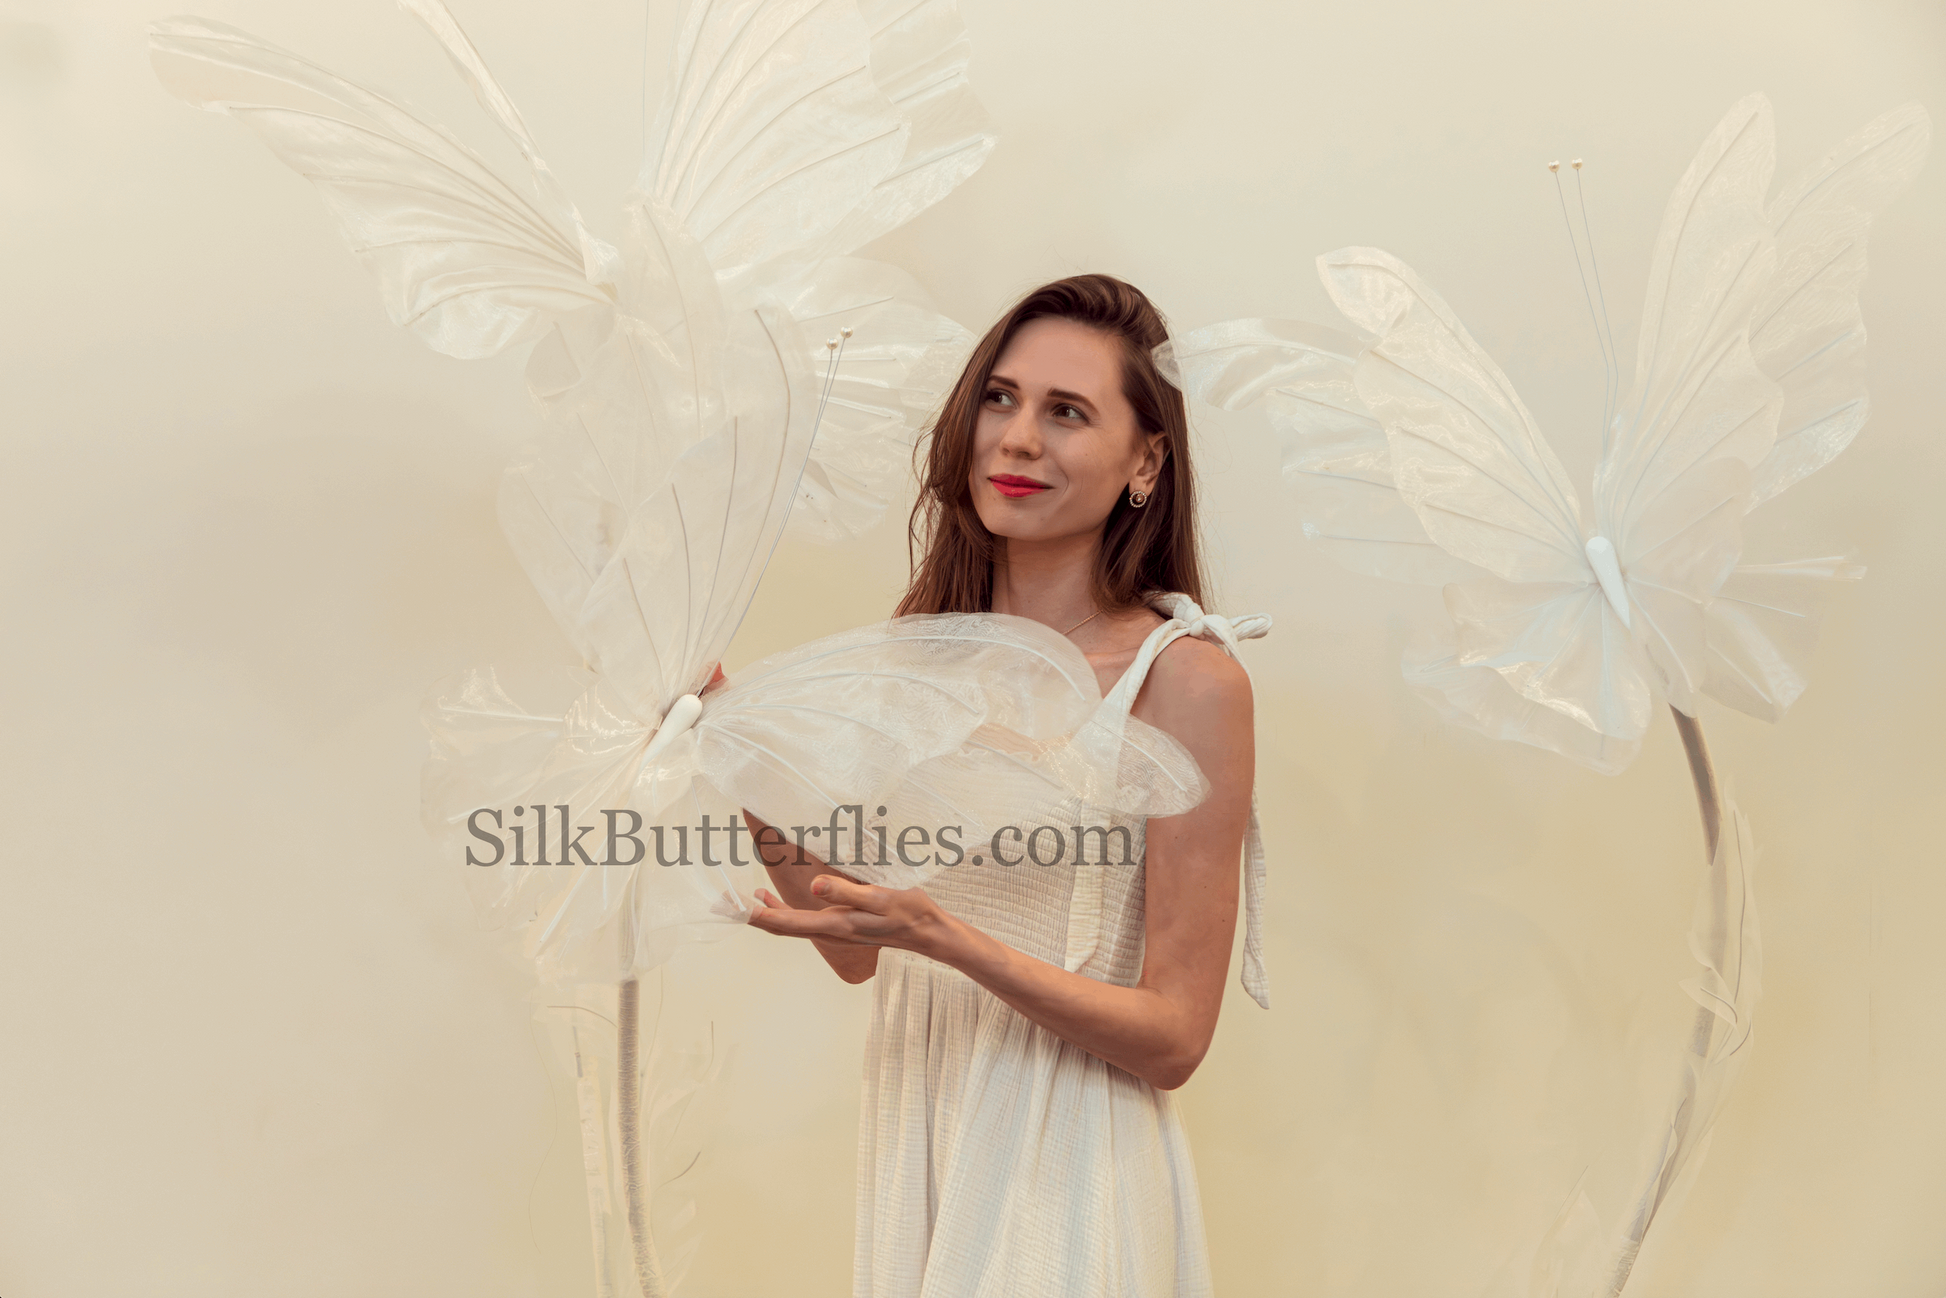 Silk Butterflies for event decor